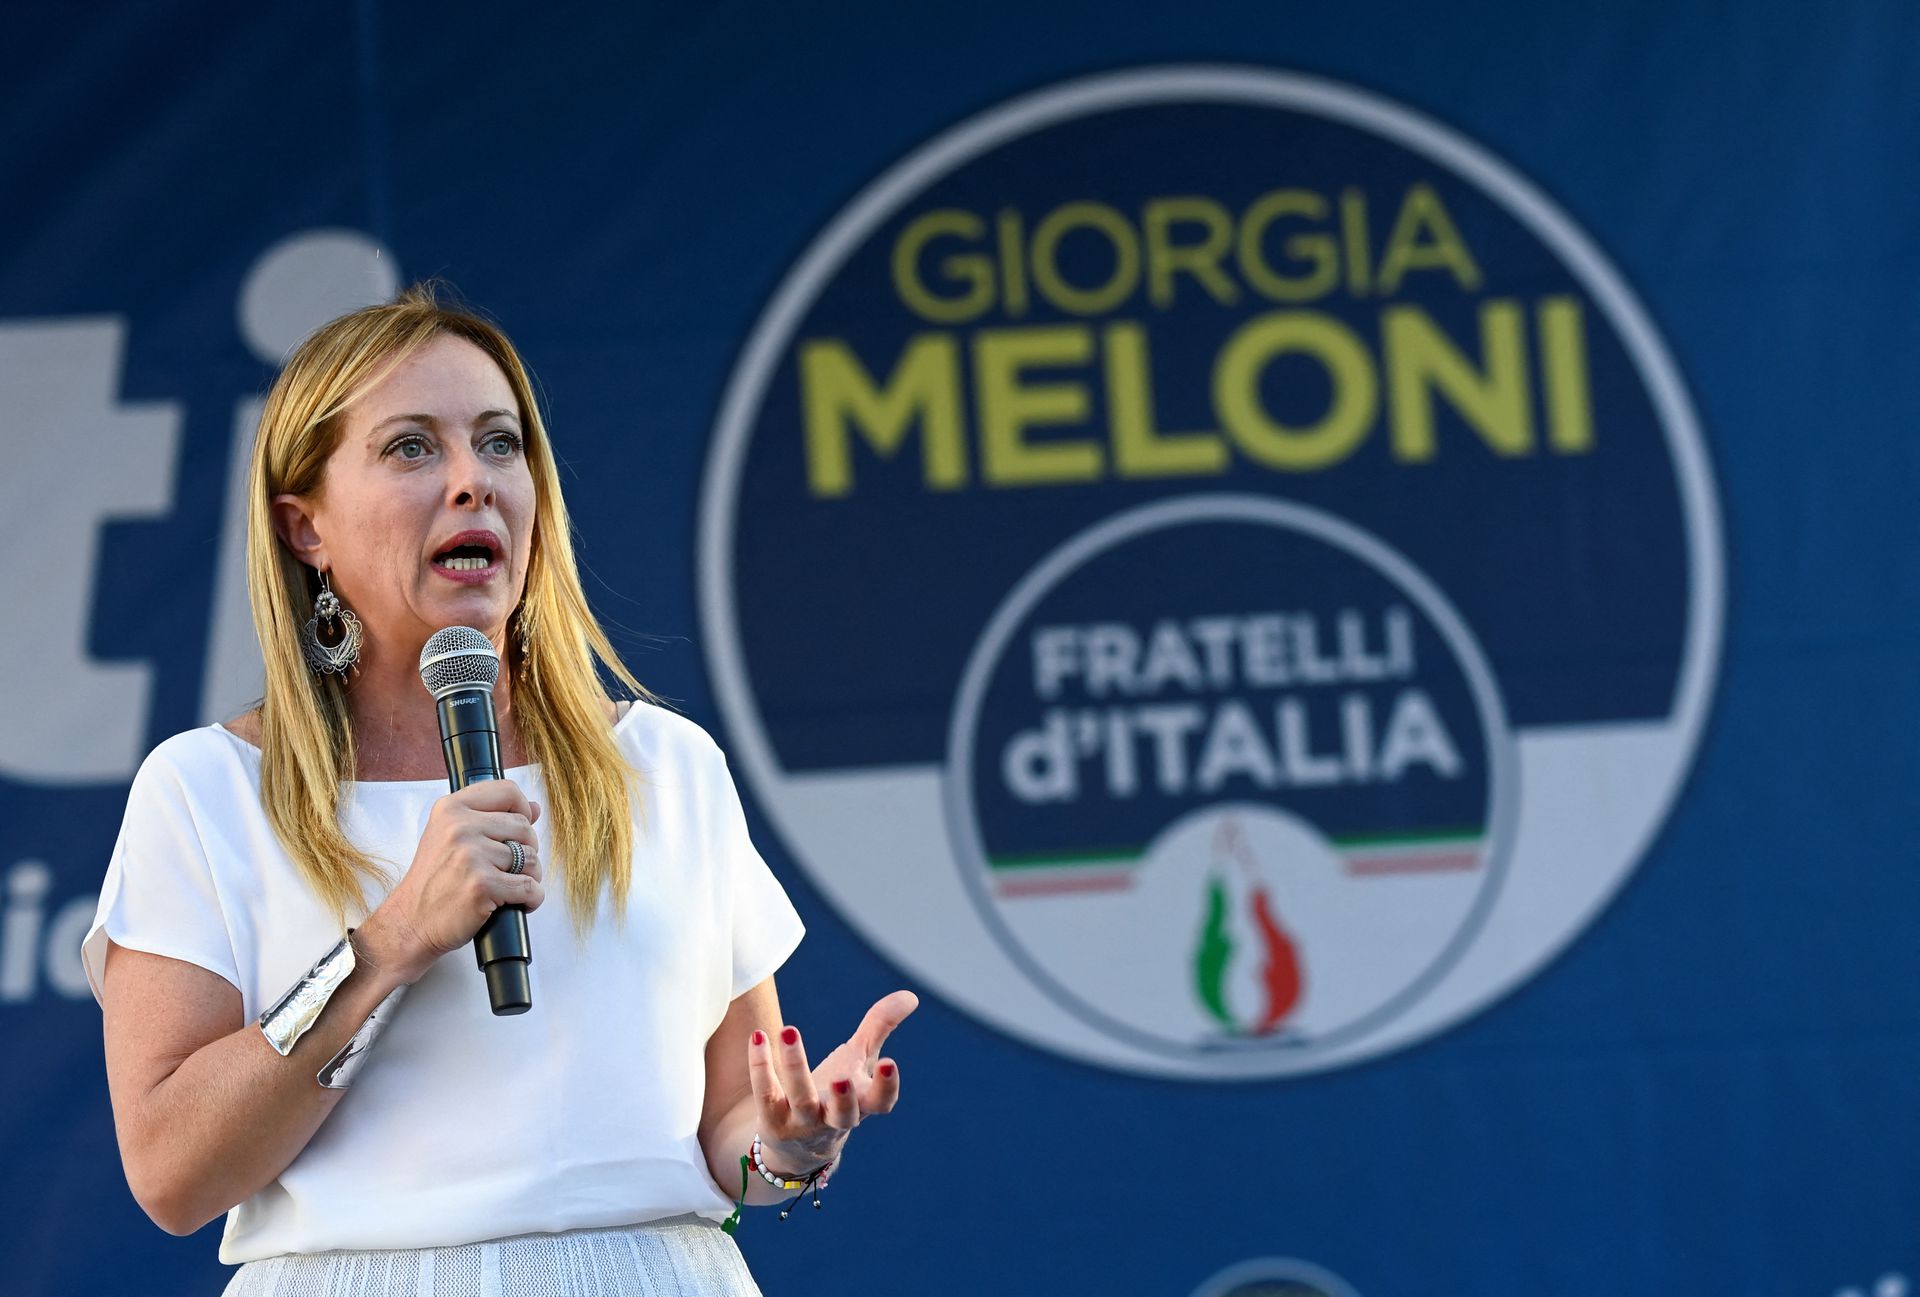 Italia: Aumento del deficit annunciato da Giorgia Meloni – Economic Post